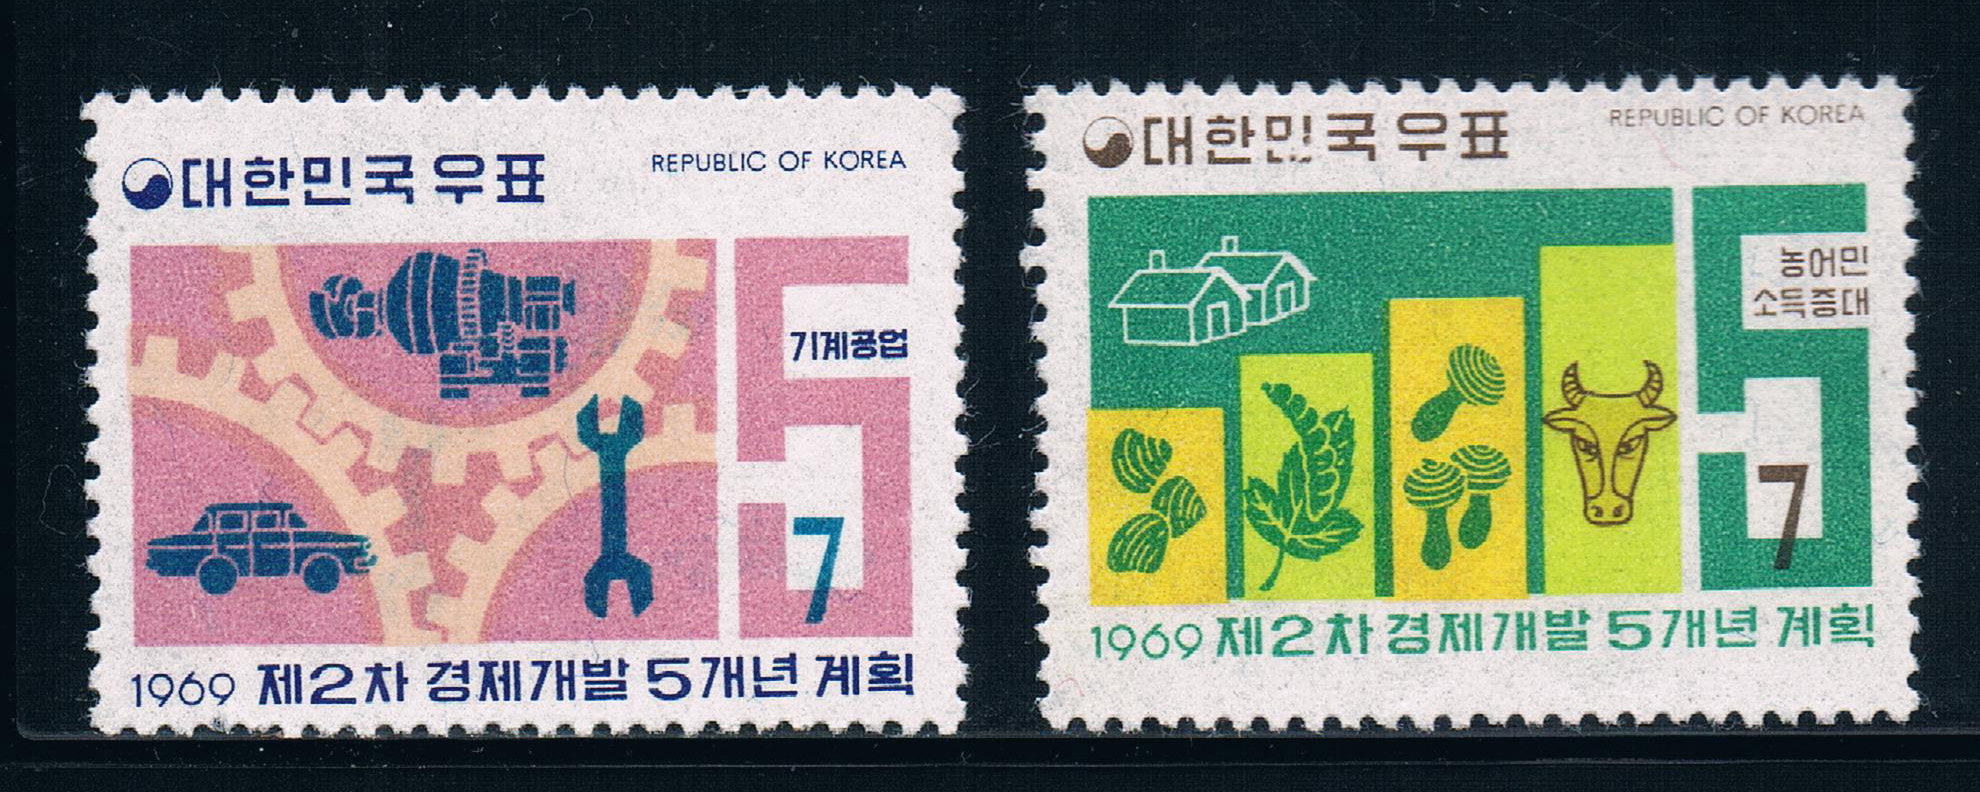 韩国1969第2个五年计划工农业发展全新外国邮